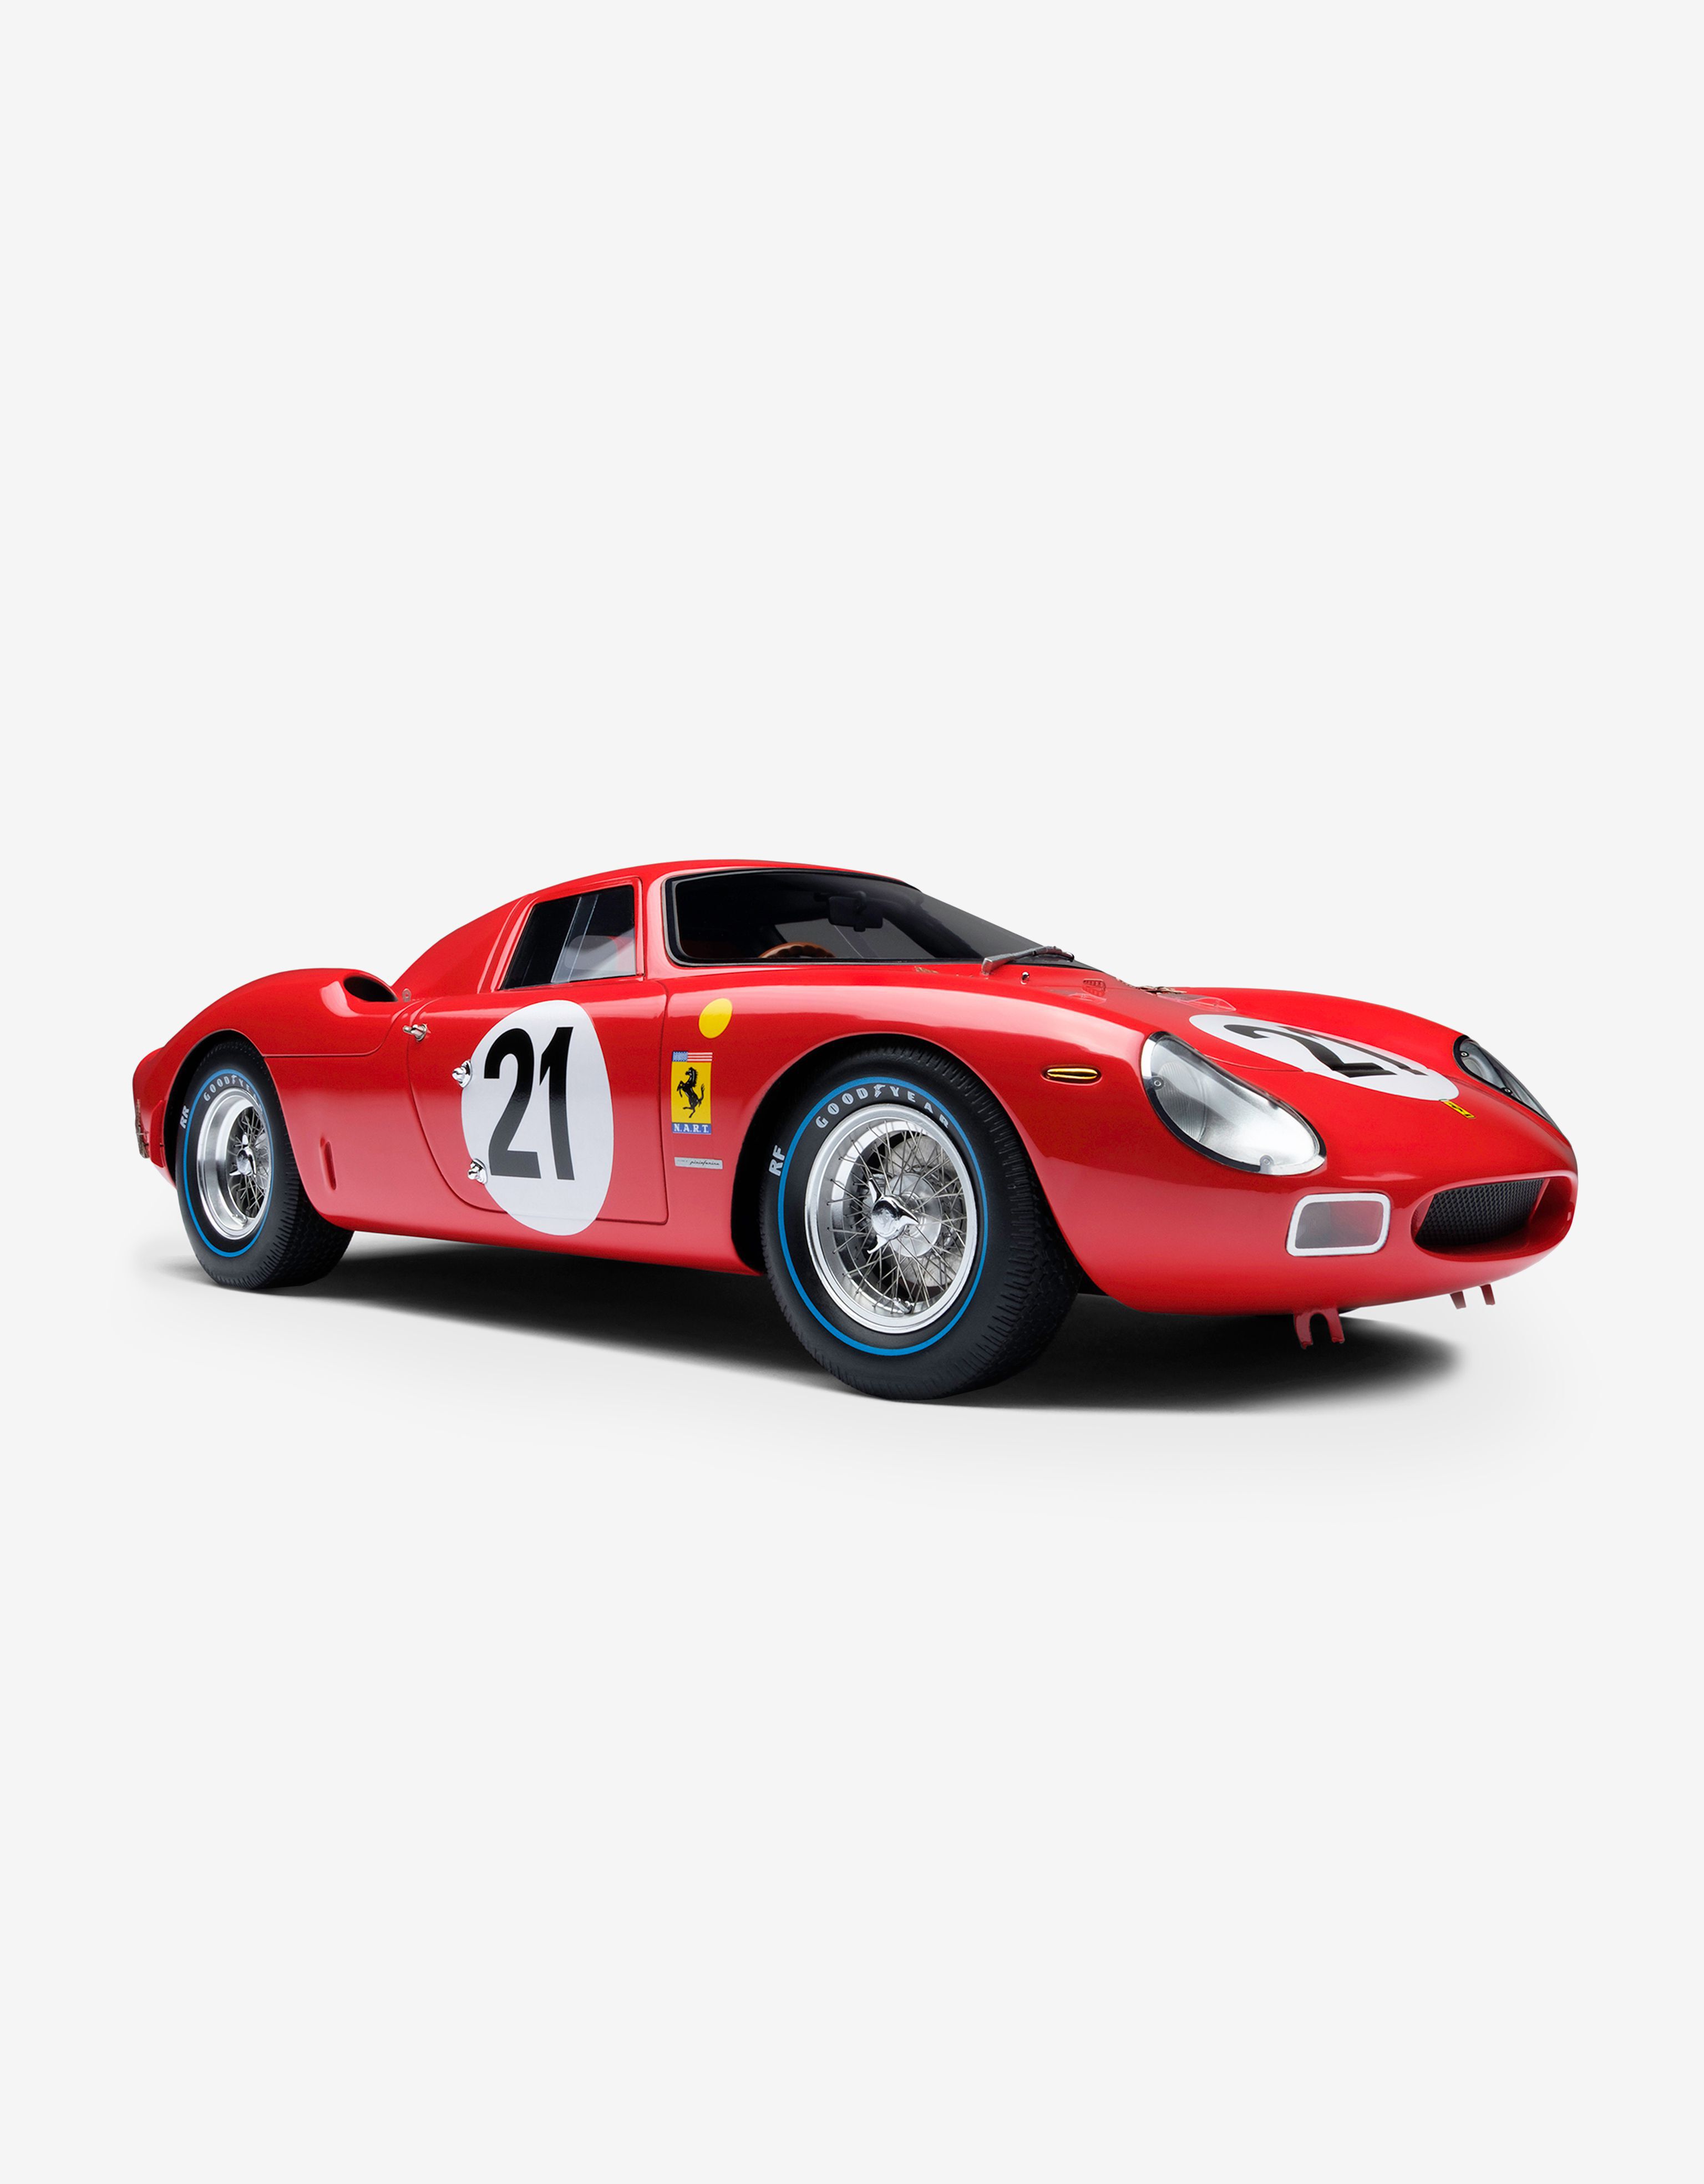 Ferrari Ferrari 250 LM 1965 Le Mans model in 1:18 scale Red L7588f